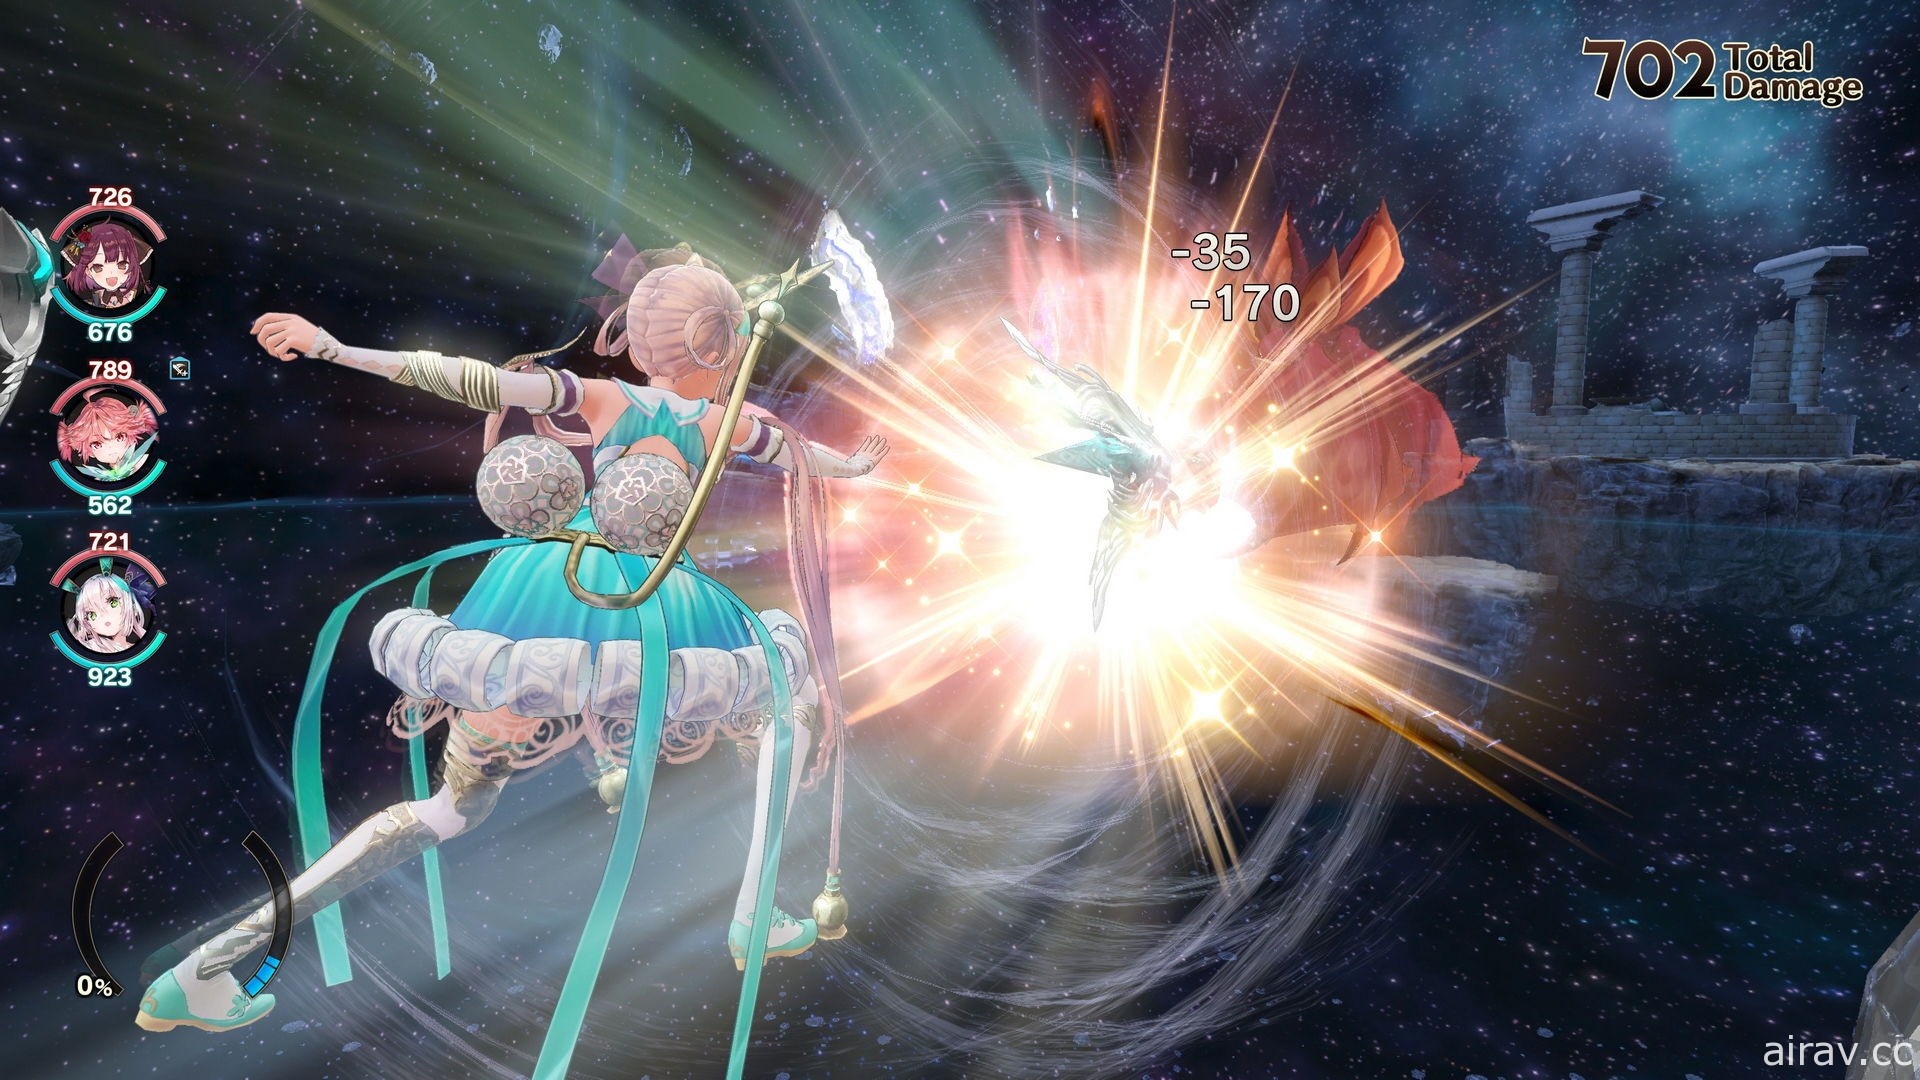 《苏菲的炼金工房 2》免费 DLC 第 3 弹开始发布 追加头目突击战和新装饰品